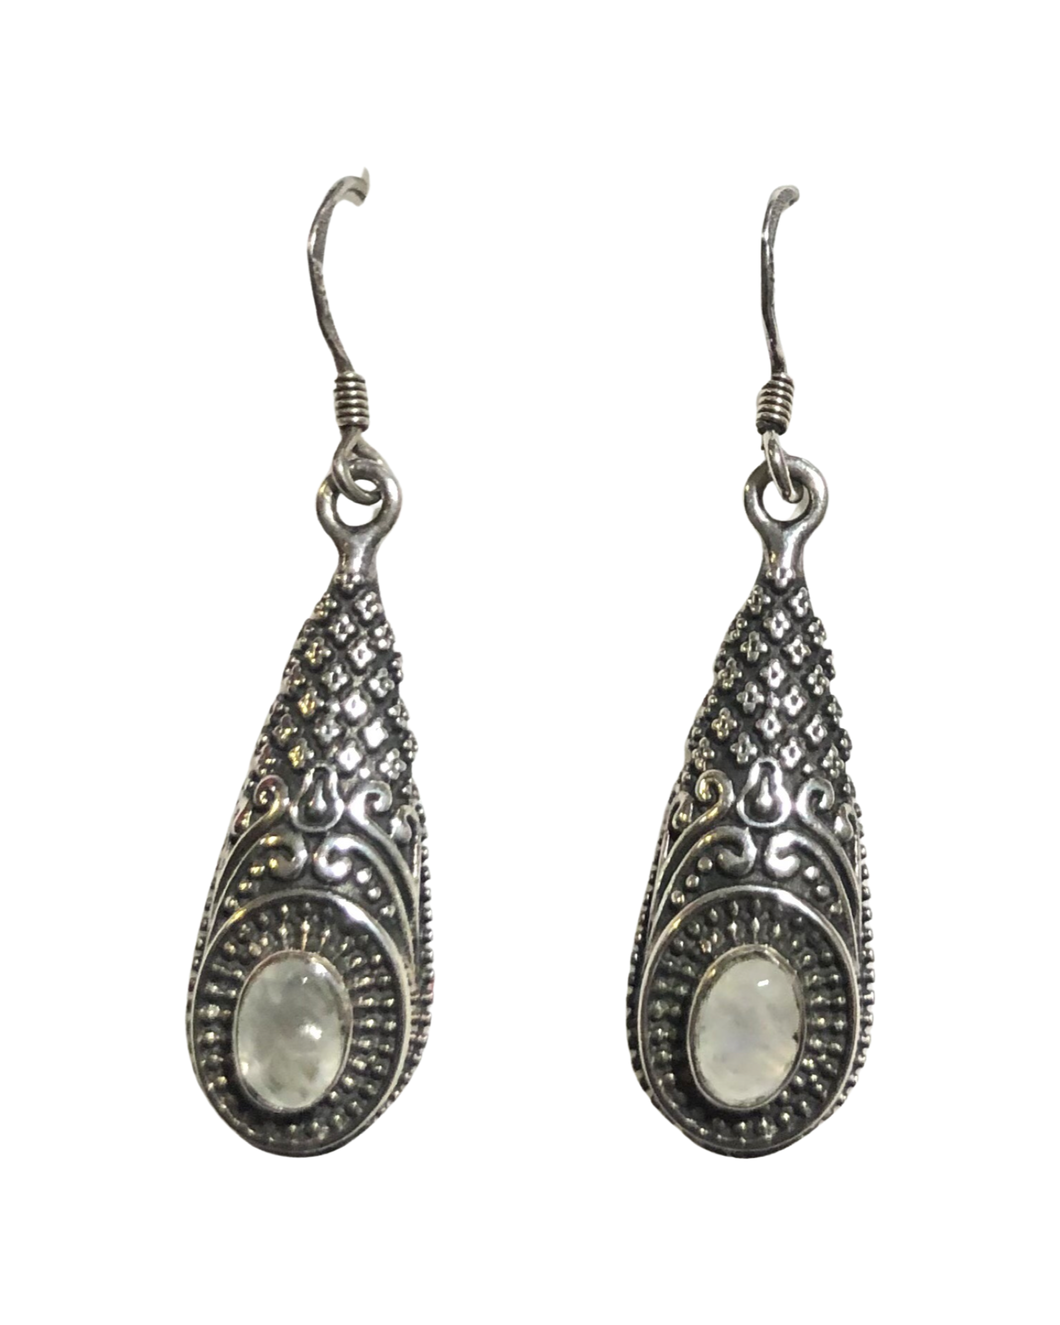 Moonstone sterling silver earrings   (E301)